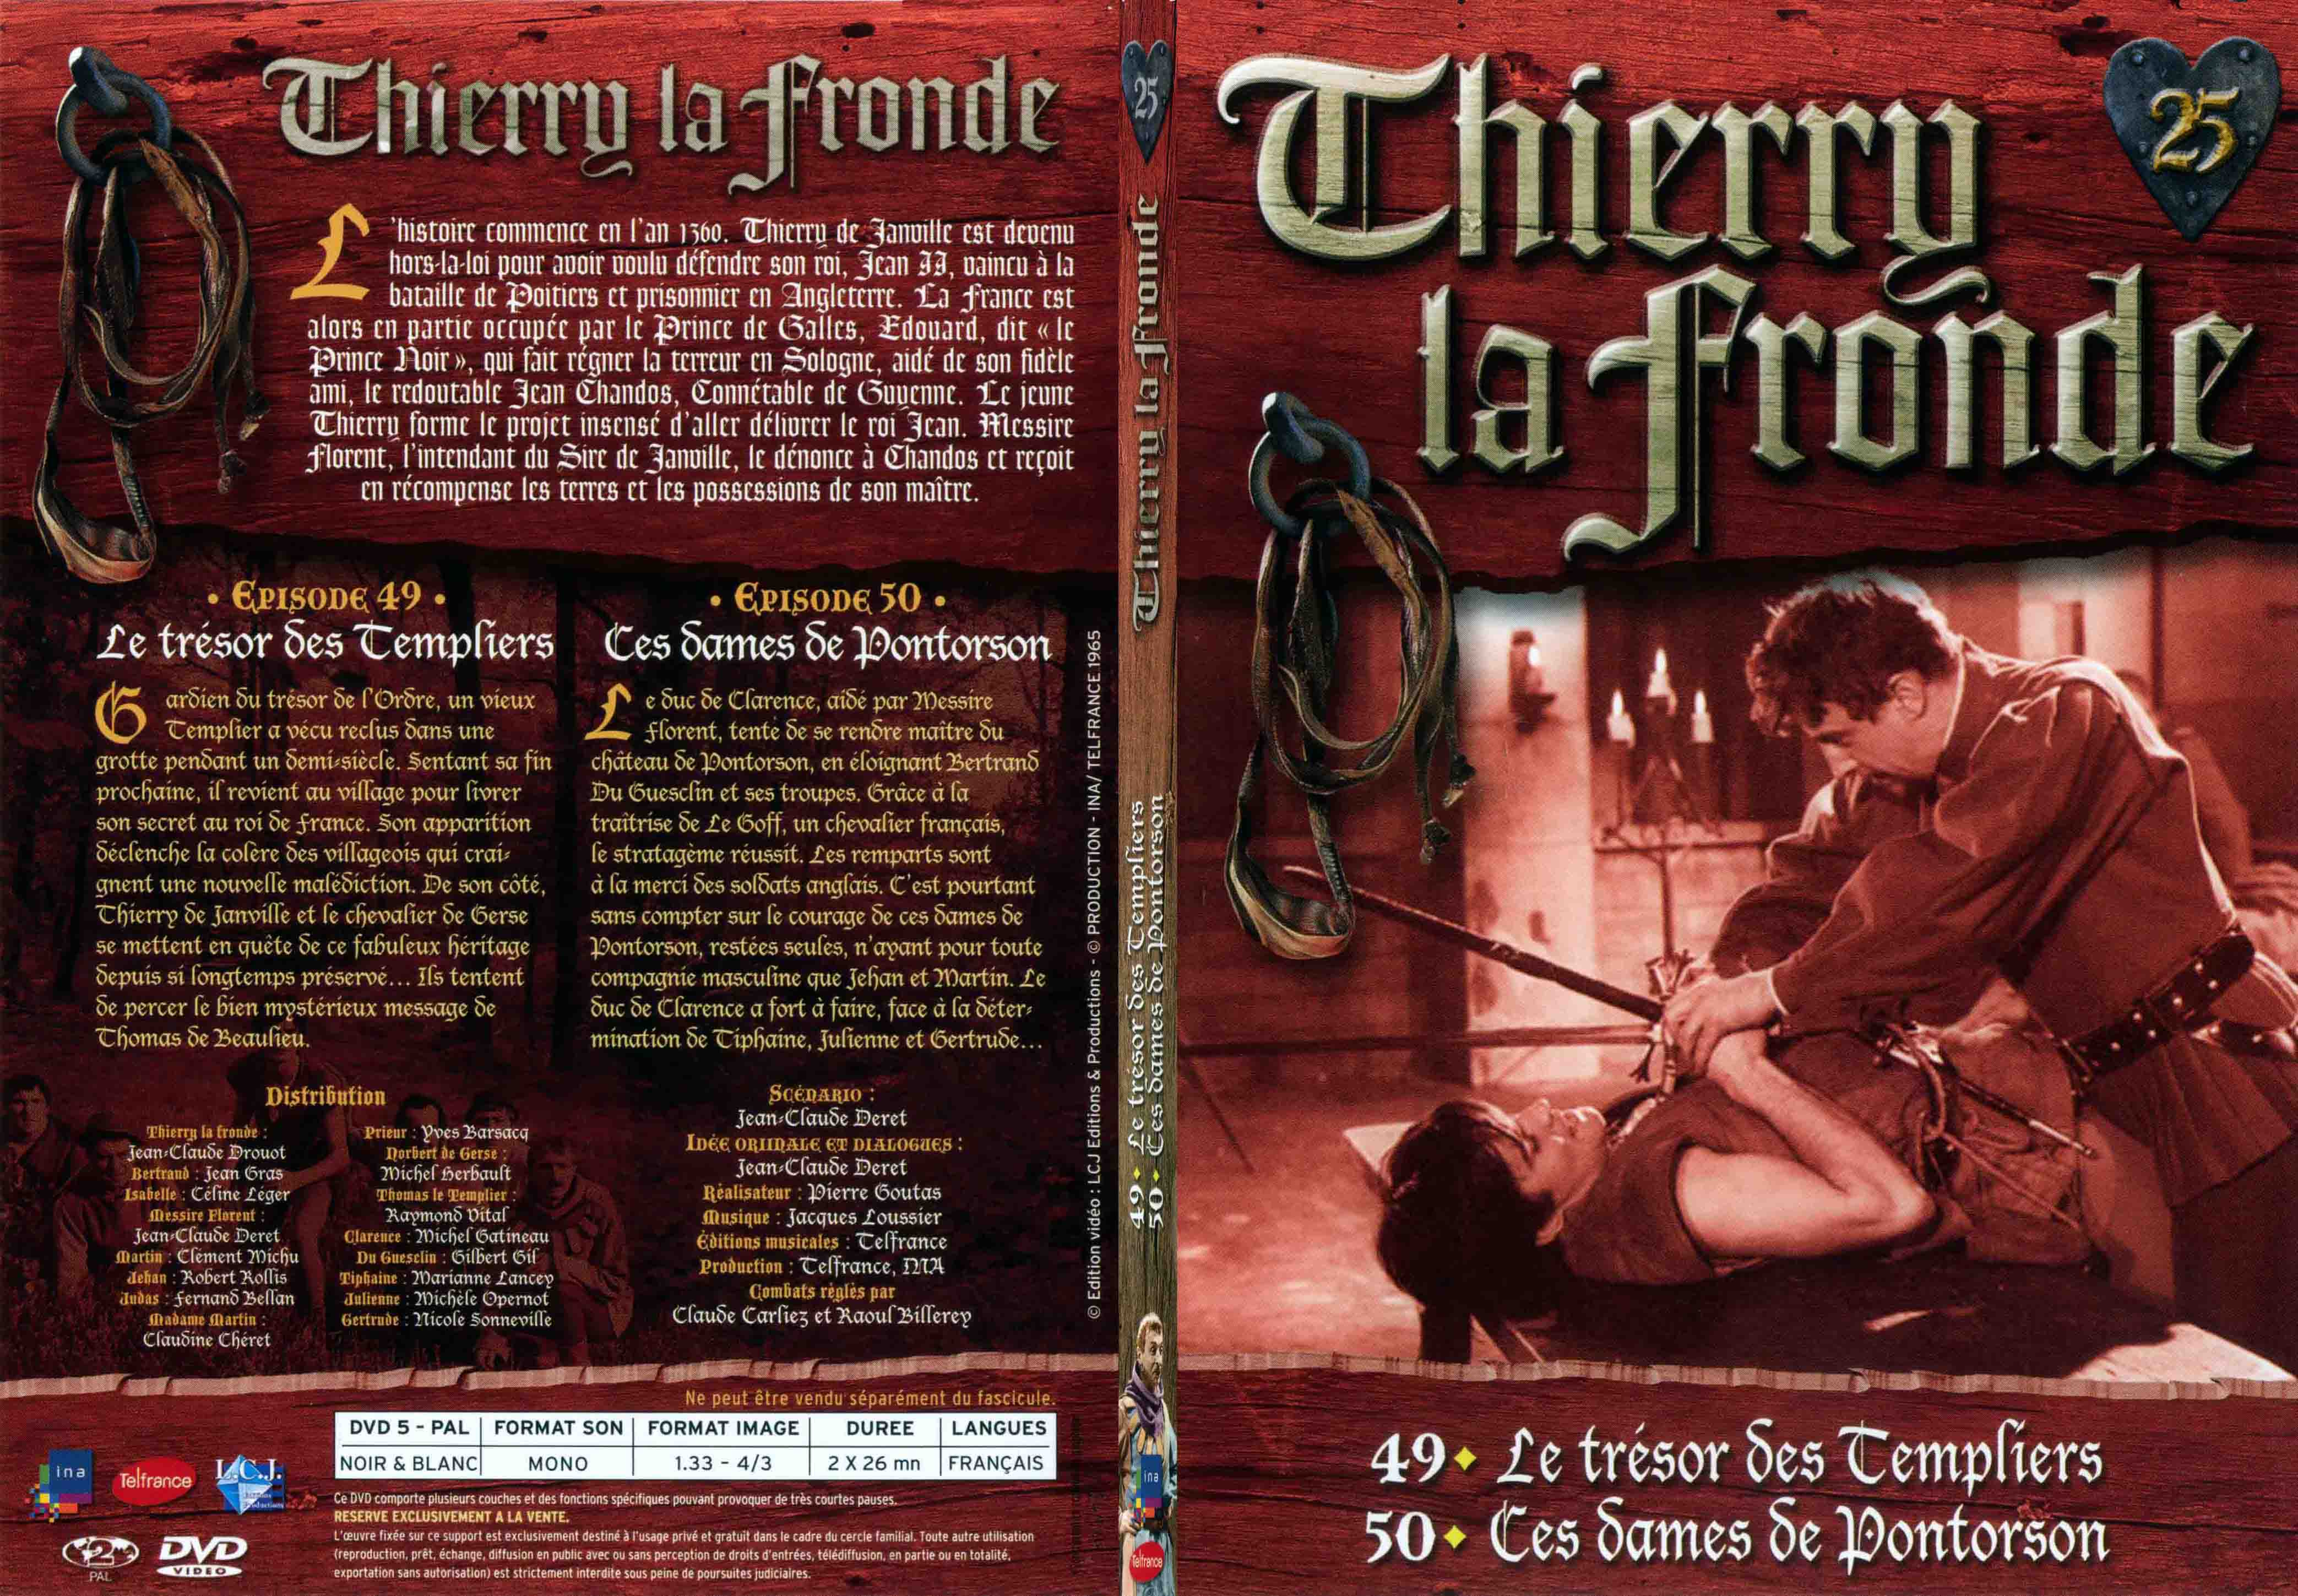 Jaquette DVD Thierry la Fronde vol 25 - SLIM